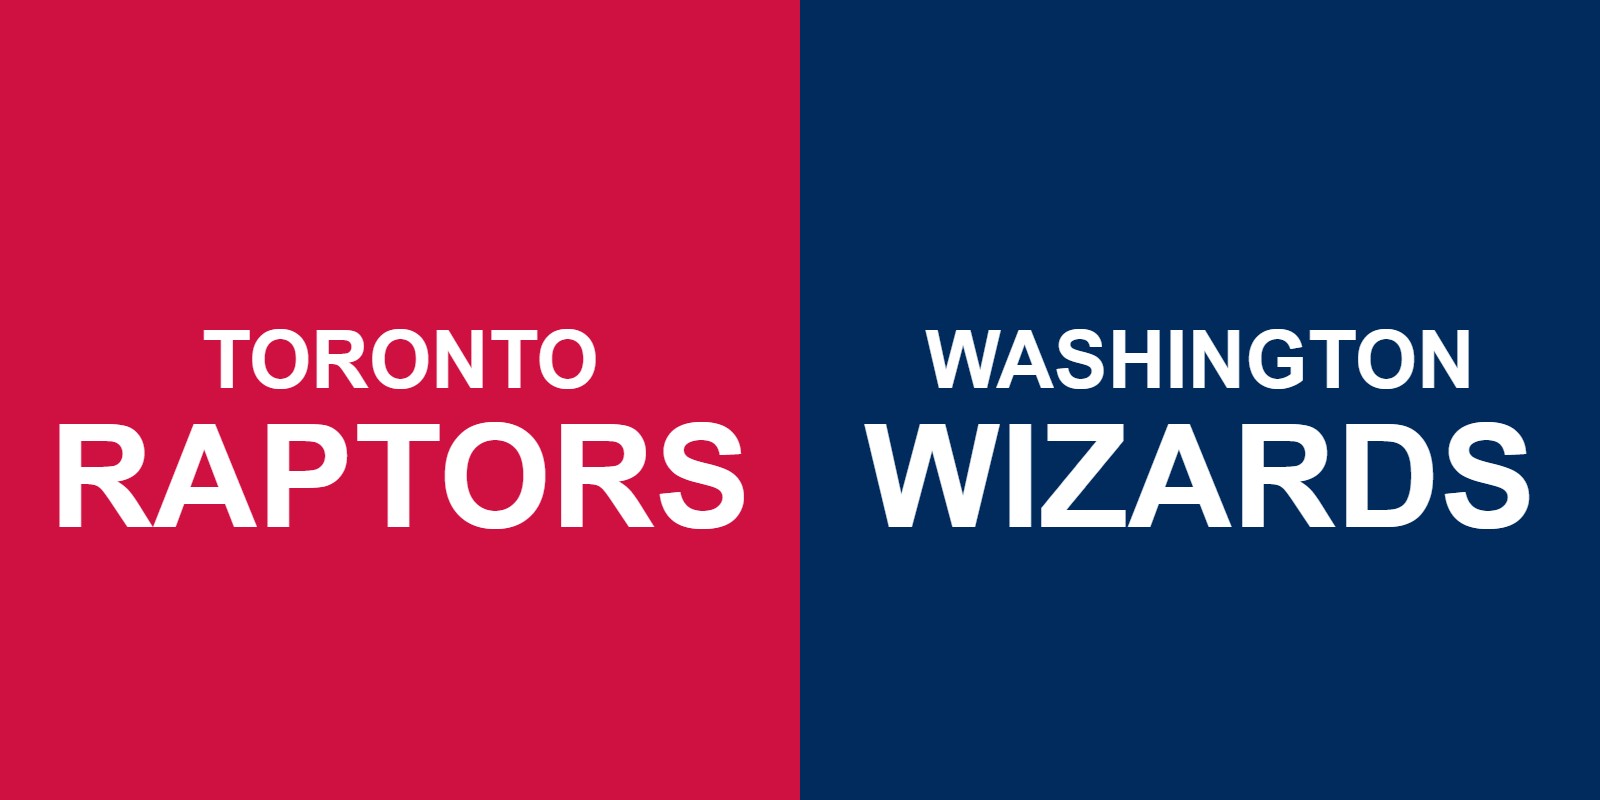 Raptors vs Wizards